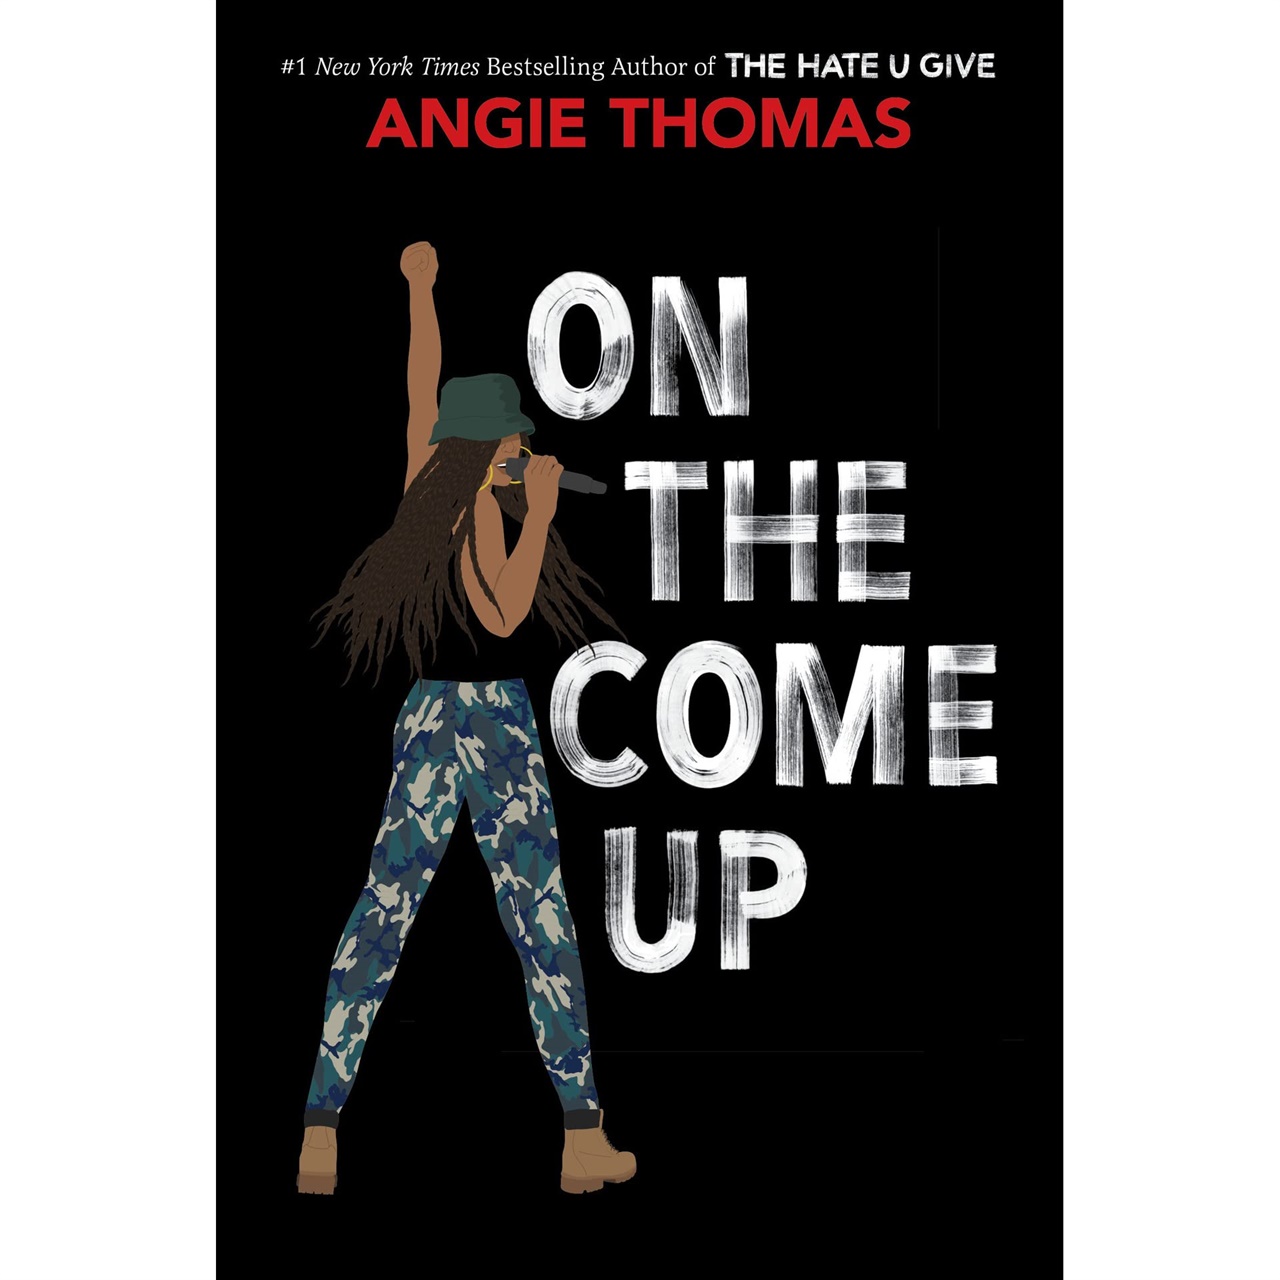 앤지 토머스 지음 'On The Come Up', 인종차별에 대해 알려주는 책